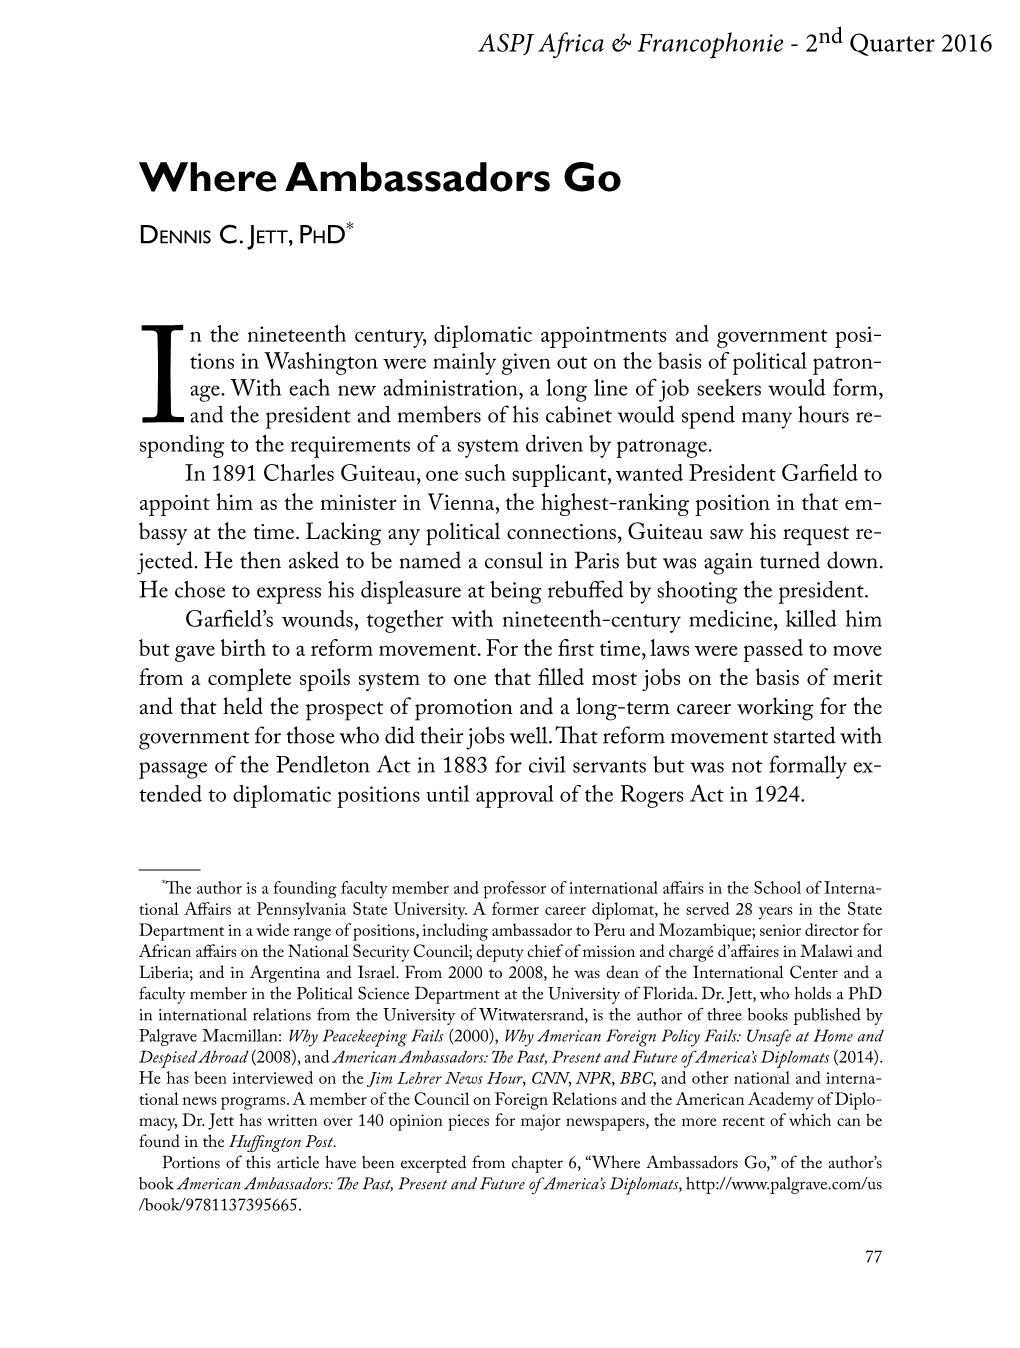 Where Ambassadors Go